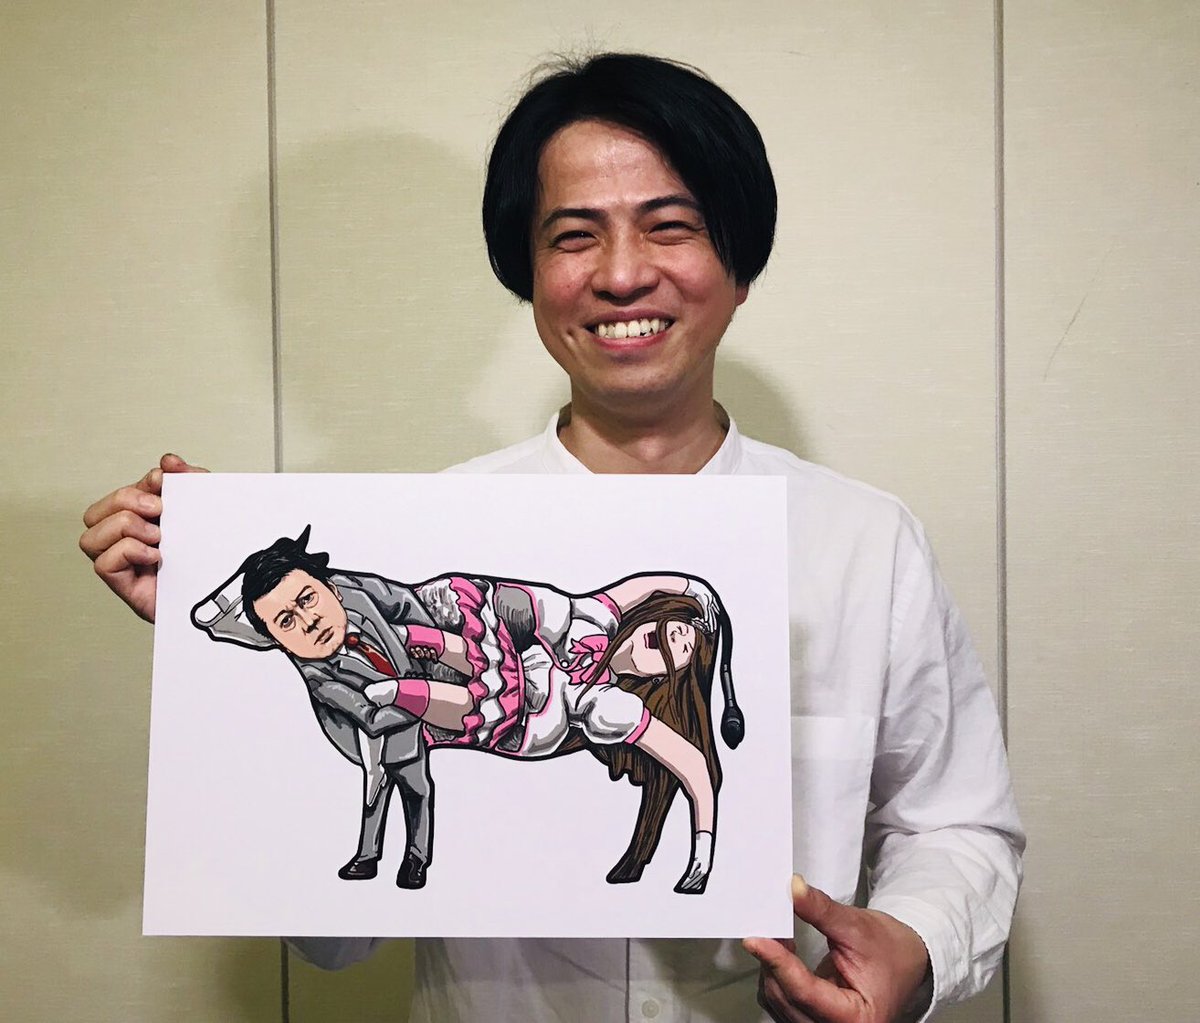 スッキリ 日本テレビ 今朝の クイズッス では イラストレーター山形尚平さんが スッキリオリジナルのシルエットクイズを出題してくれました 牛 だと思ったら ジャイアントスイングする加藤浩次 みんな騙されました 加藤さんを描く